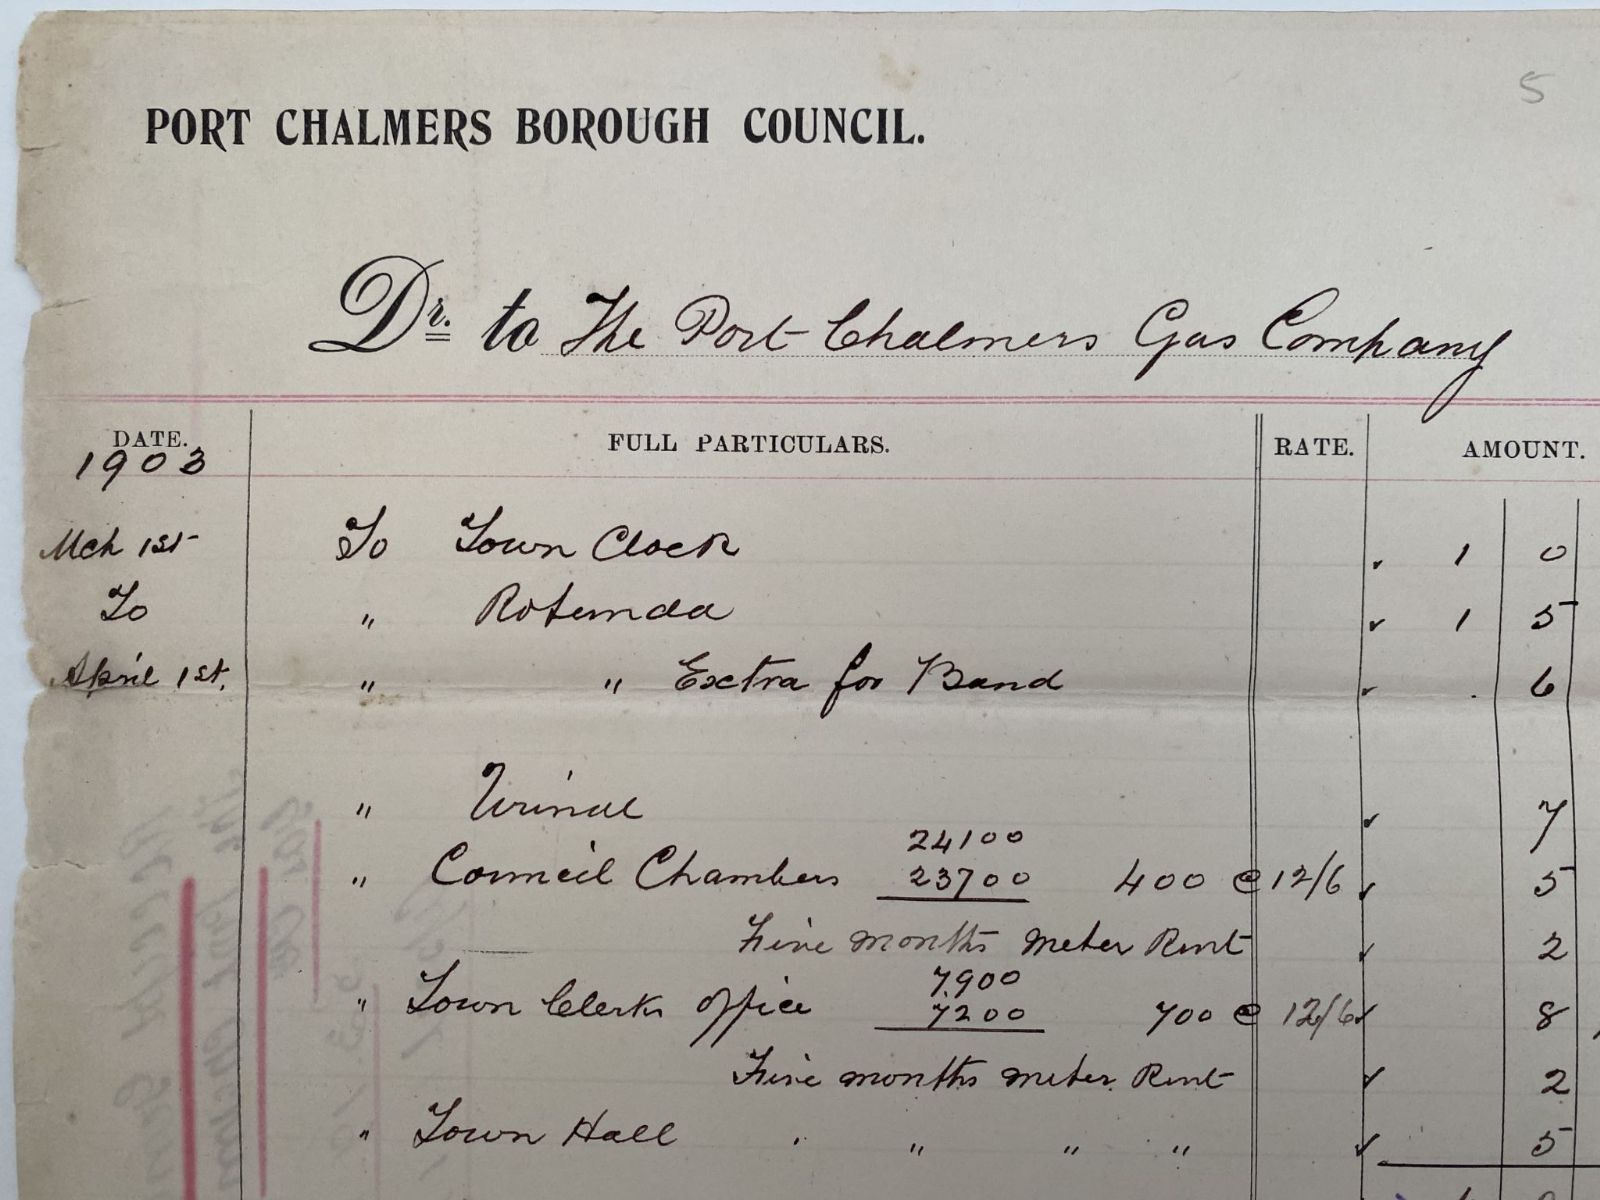 ANTIQUE INVOICE / RECEIPT: Port Chalmers Borough Council 1903